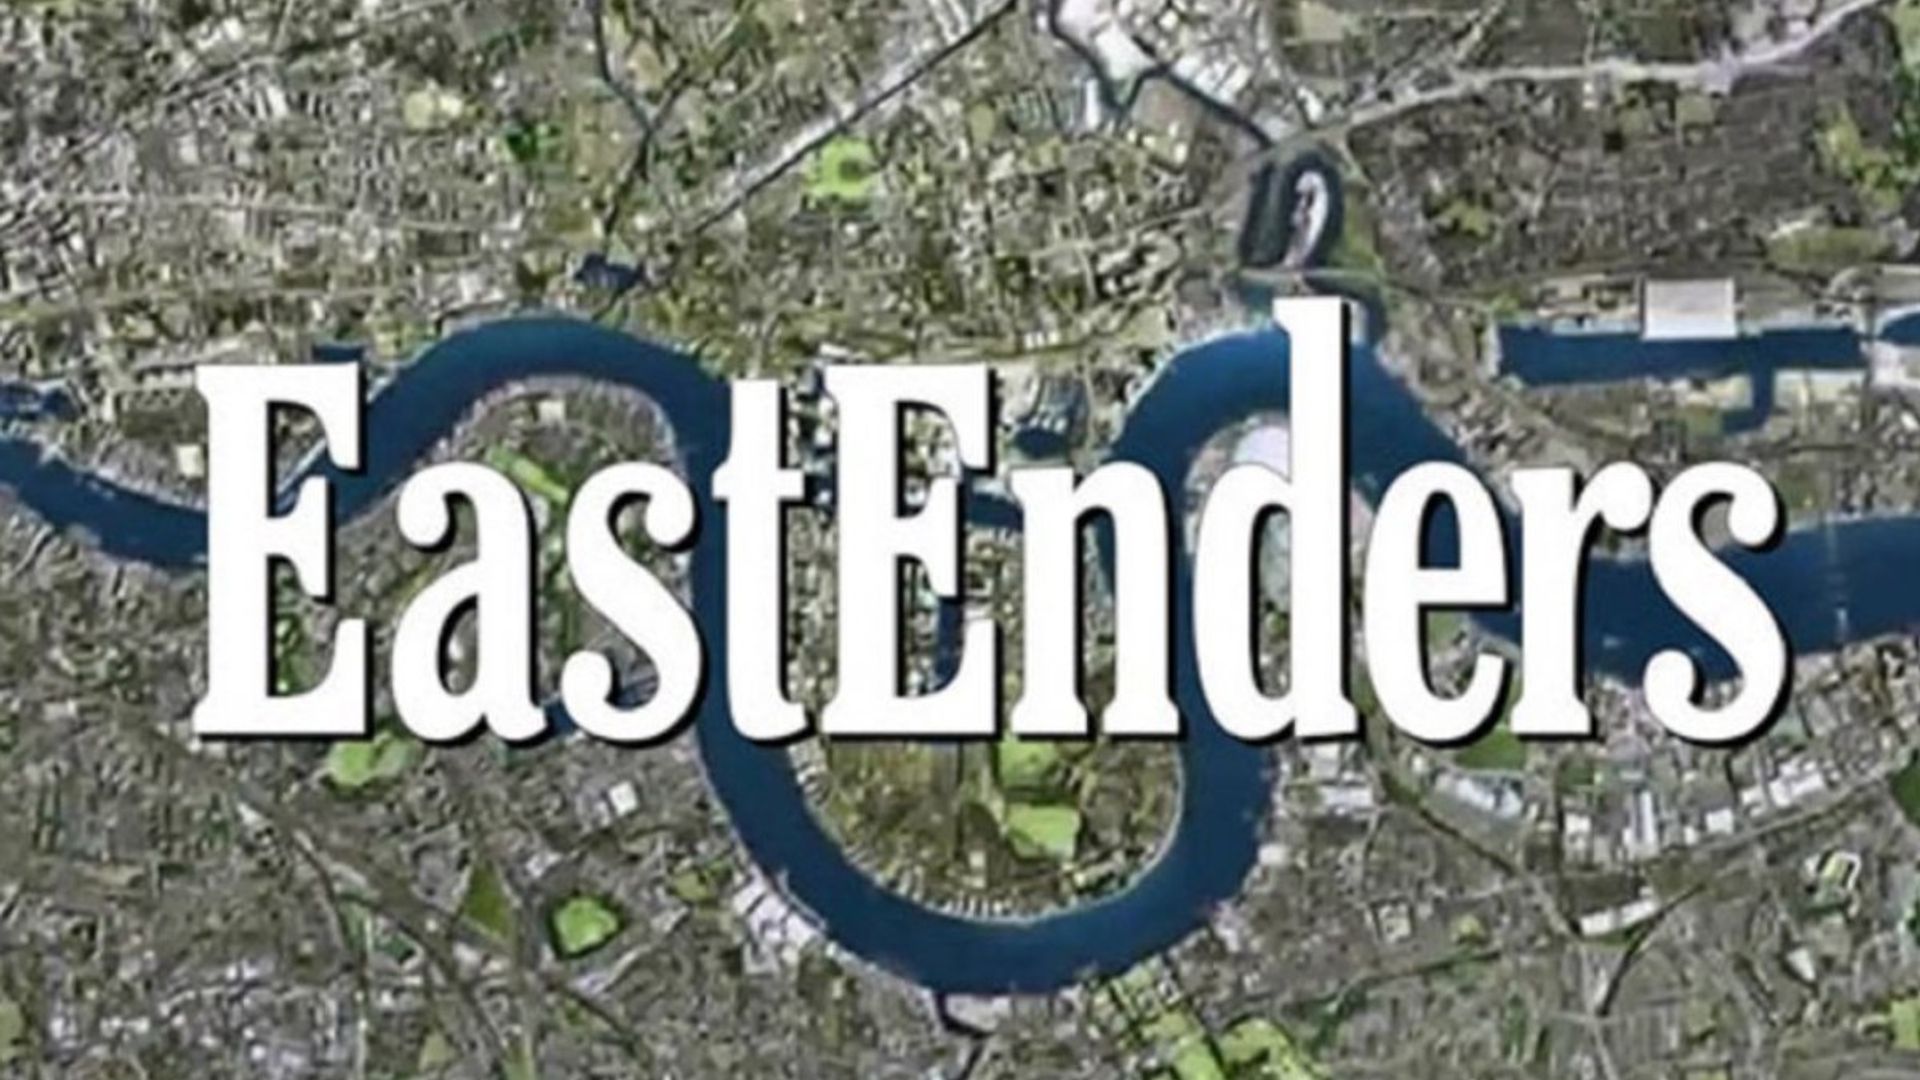 eastenders logo